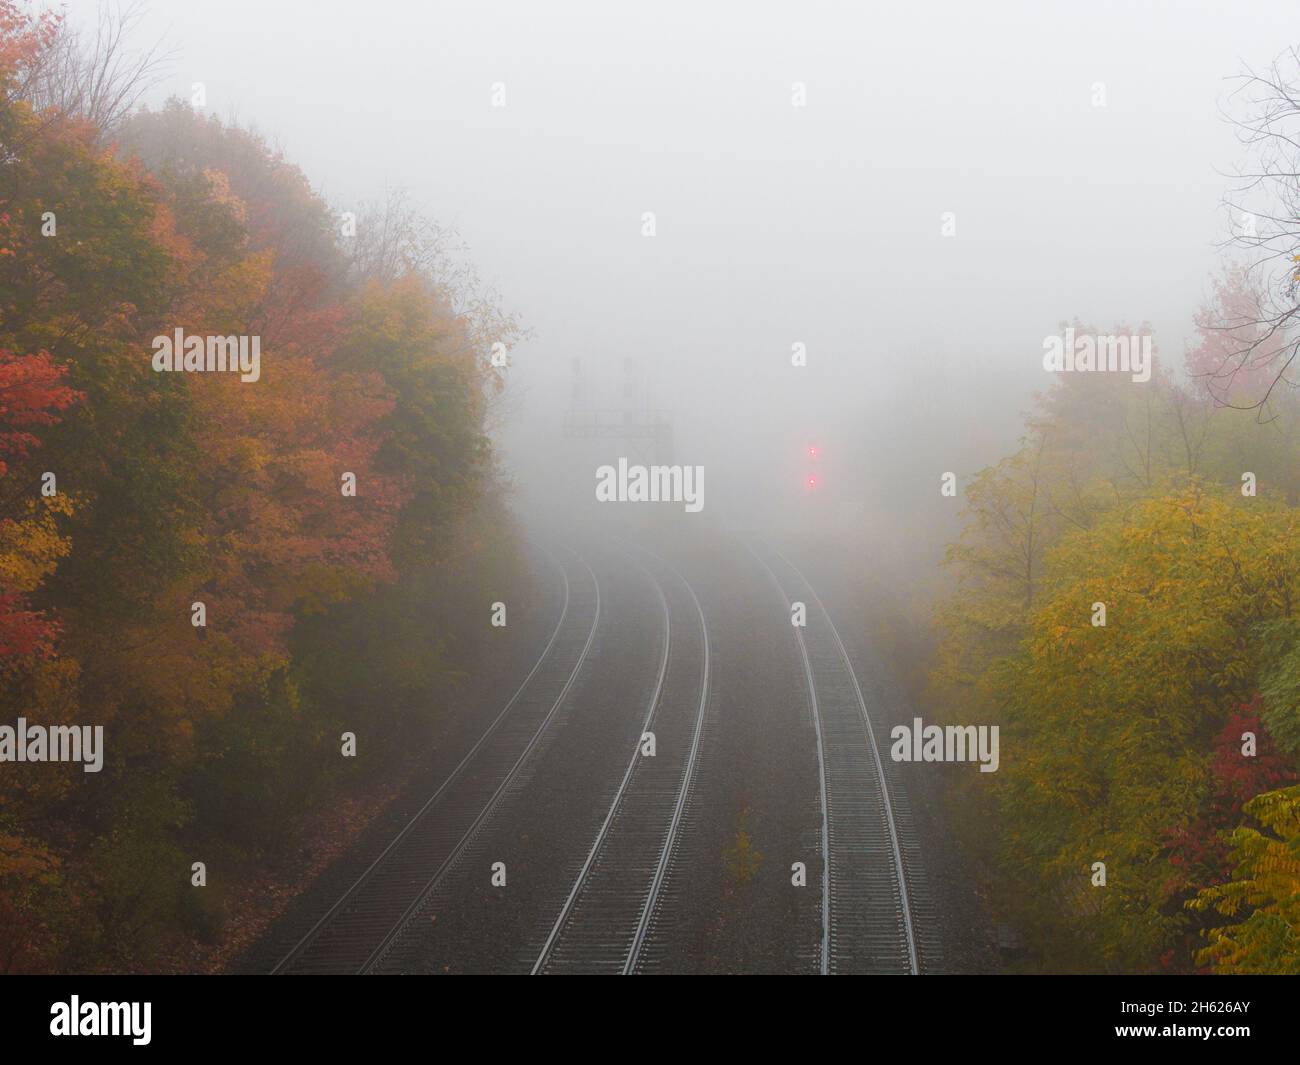 stagione autunnale in canada, ontario, nebbia mattutina, linee ferroviarie, 3 binari ferroviari, luci di segnalazione, l'ignoto Foto Stock